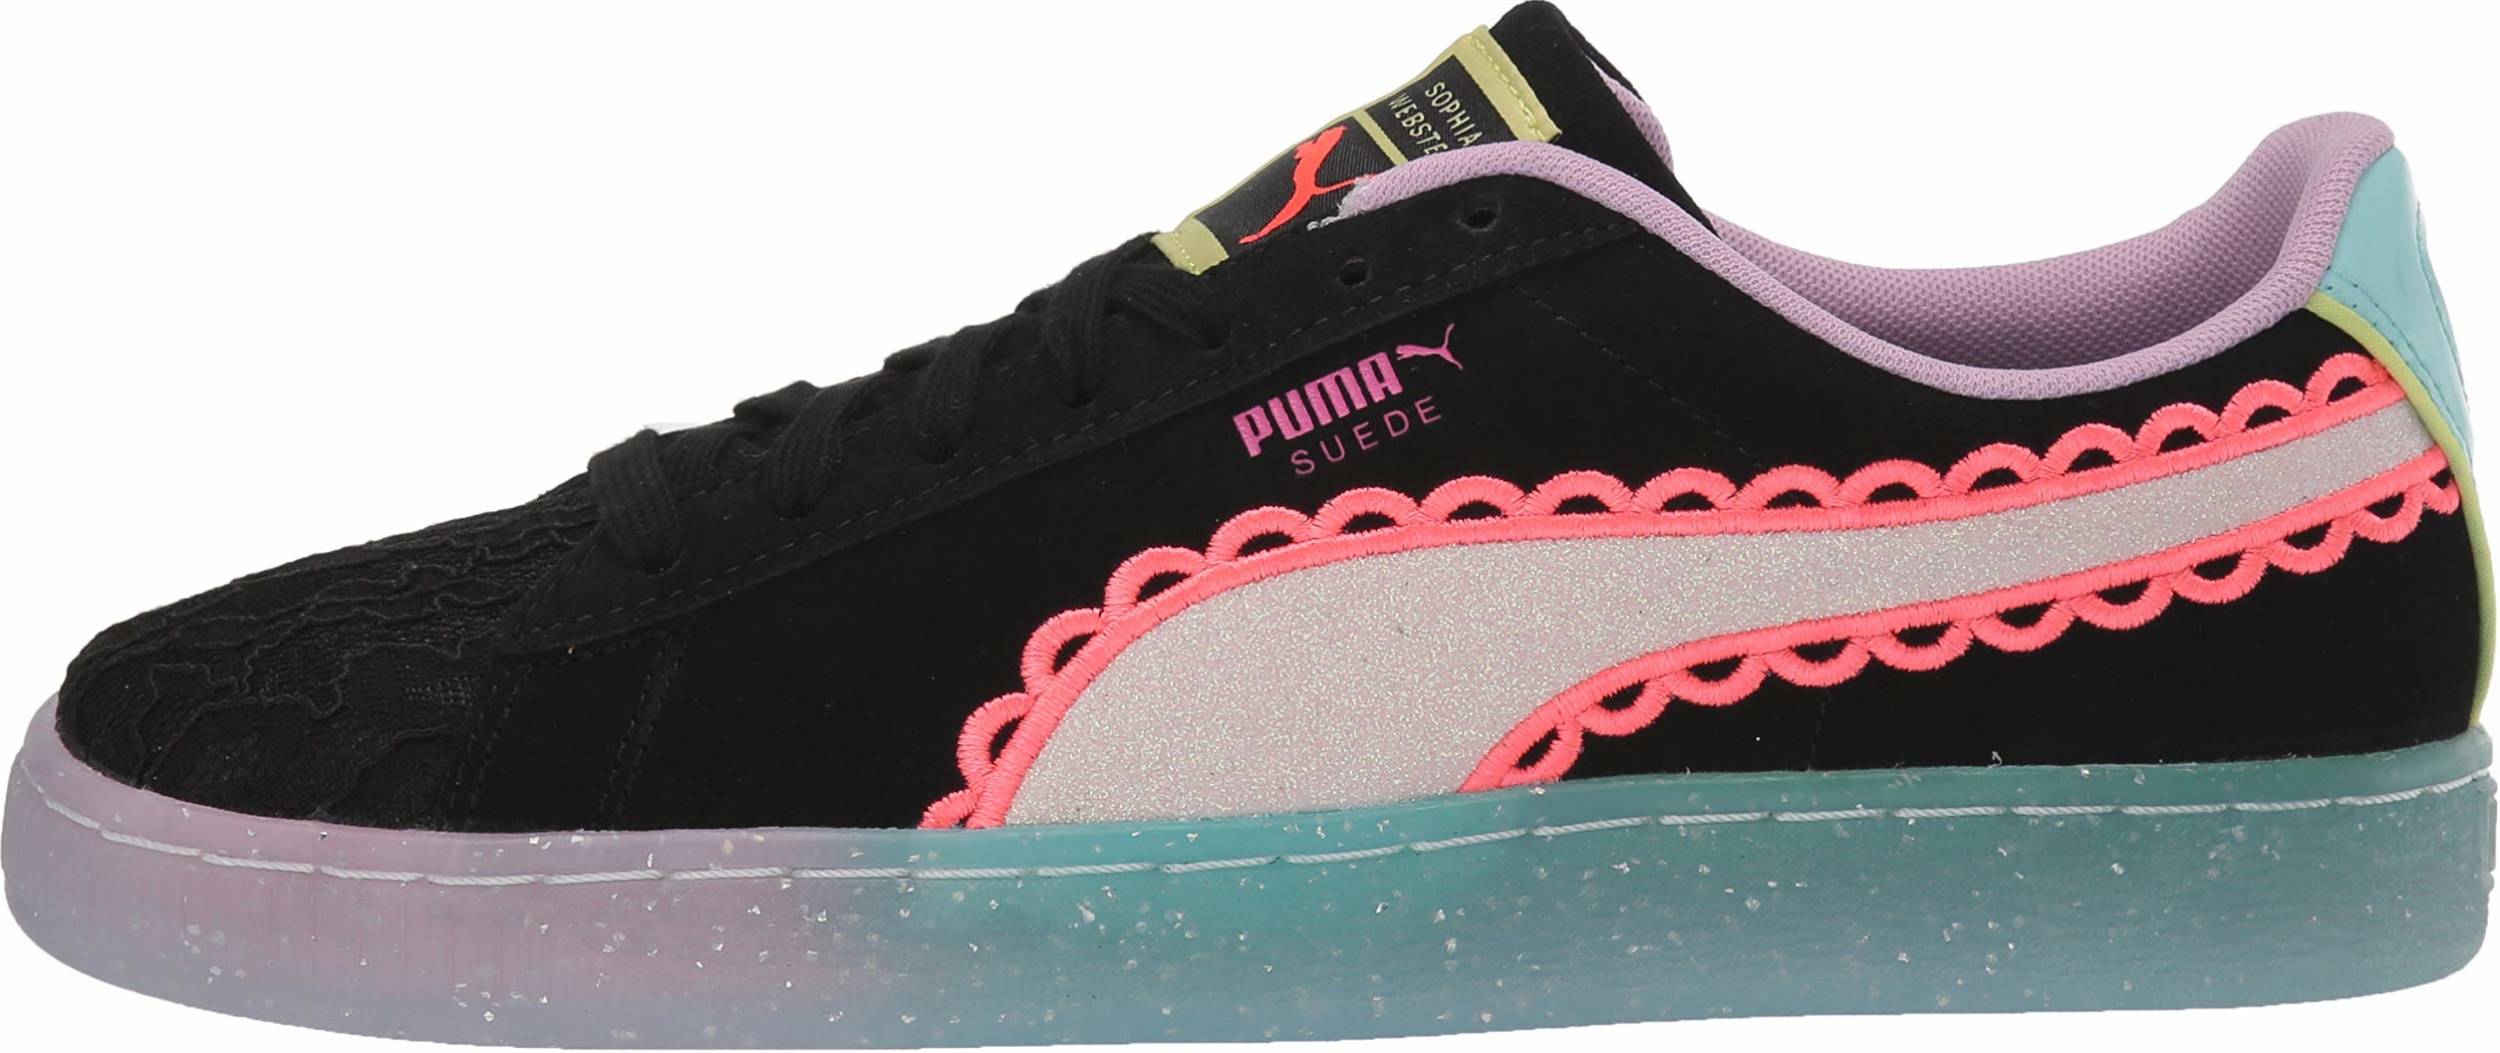 sophia webster puma shoes